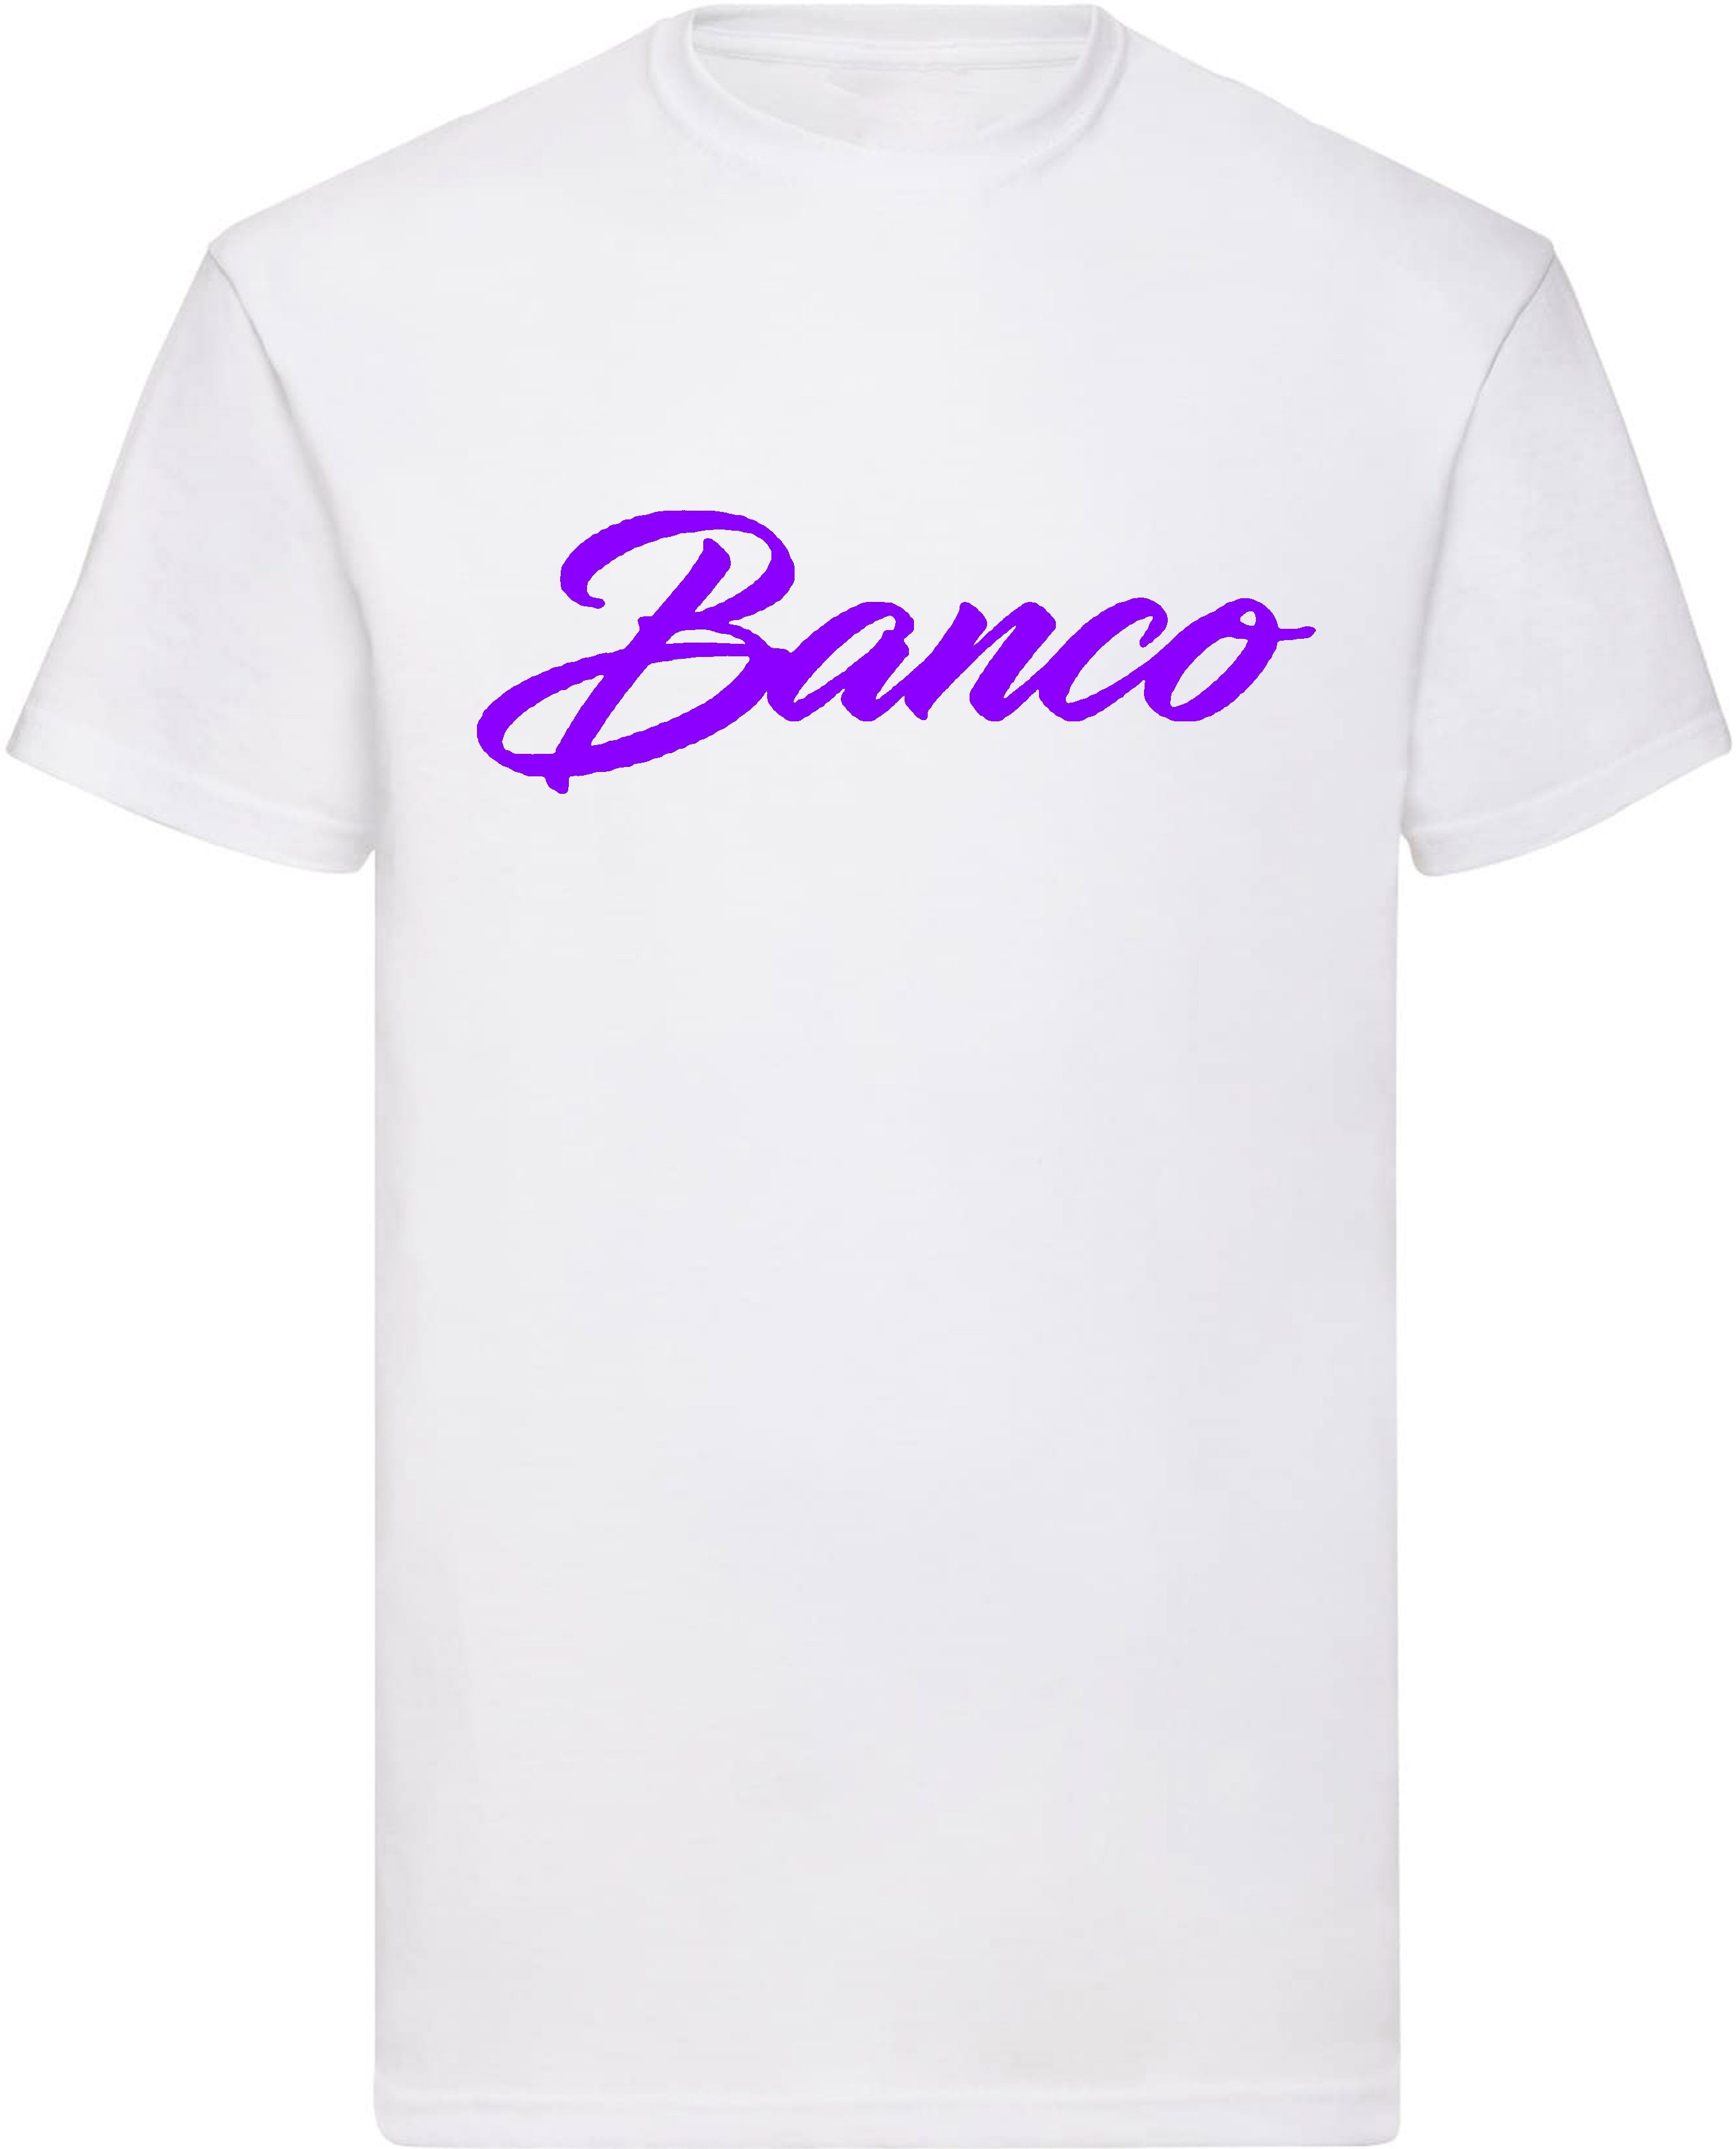 Banco T-Shirt Kurzarm 100% Baumwolle Rundhals Shirt Sommer Sport Freizeit Streetwear WeißLila | T-Shirts